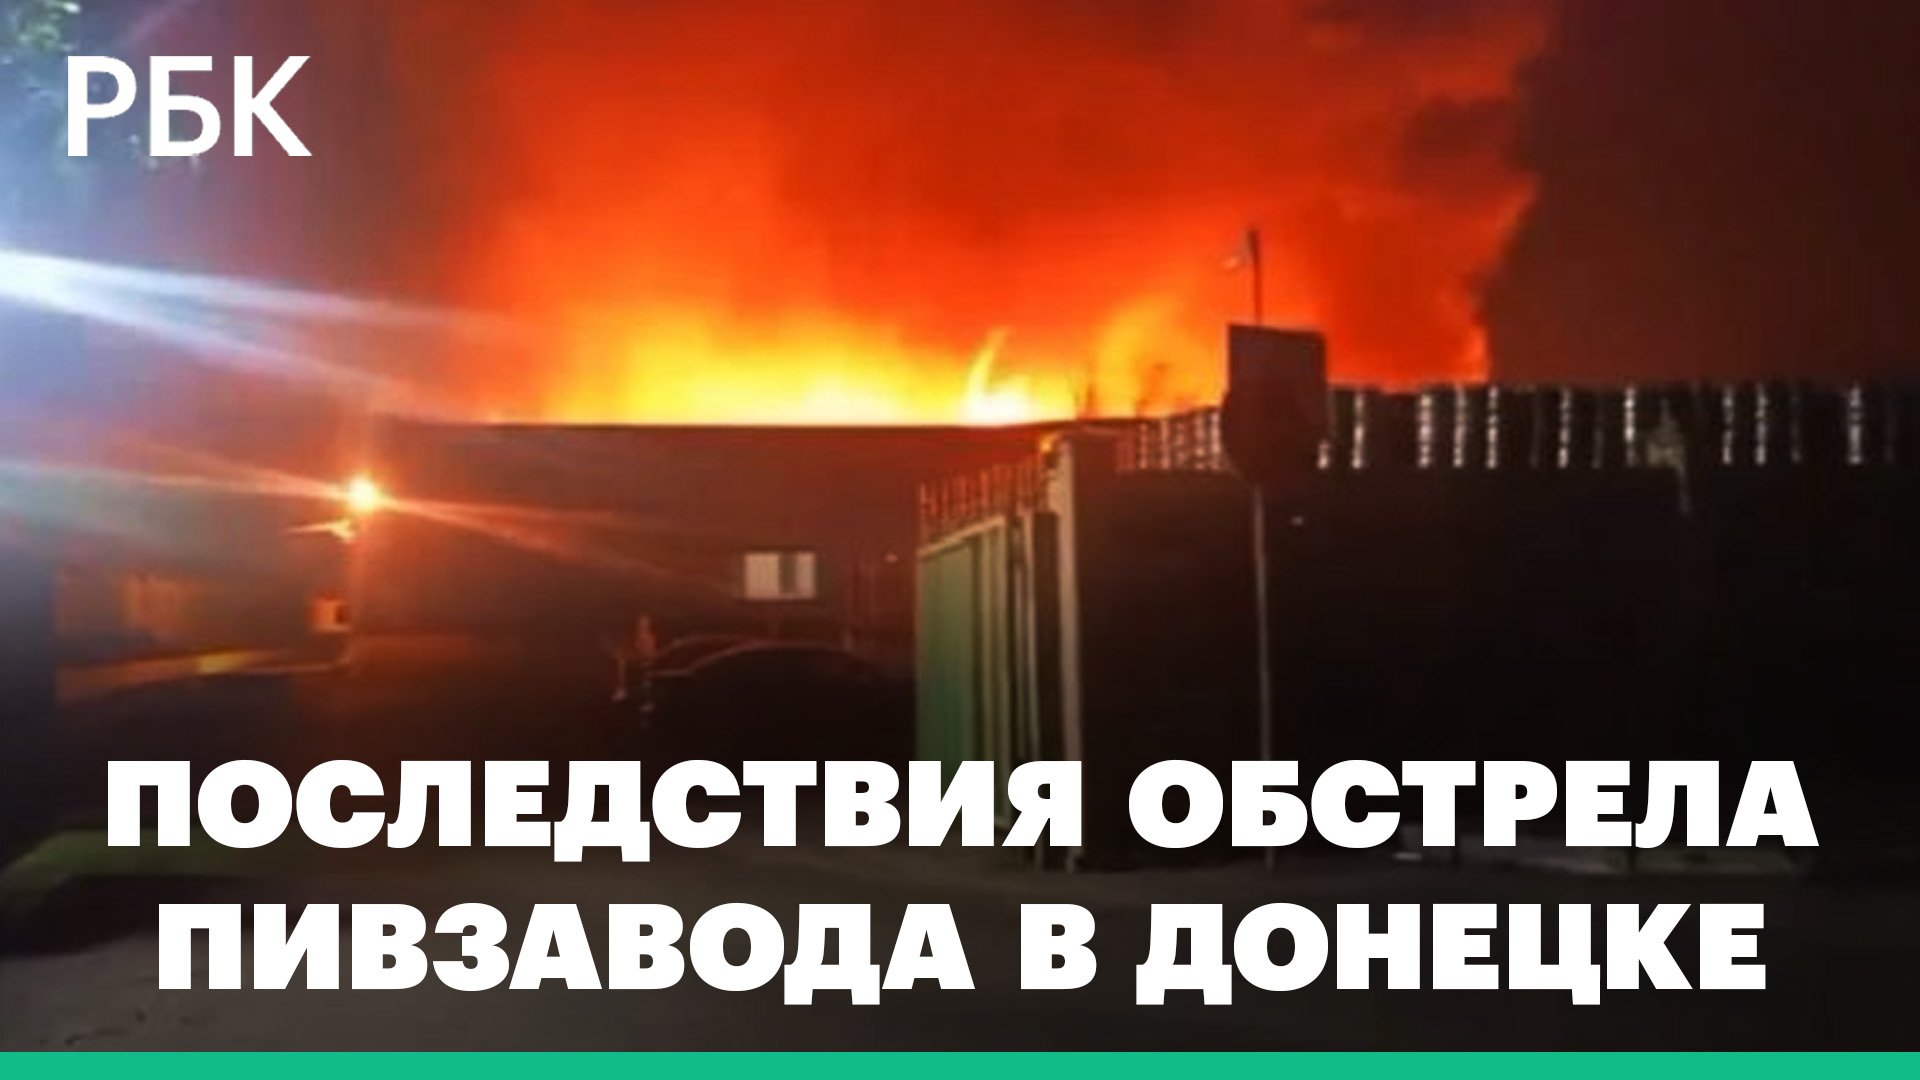 Мощный взрыв, пожар и утечка аммиака. Что известно об обстреле пивзавода в Донецке